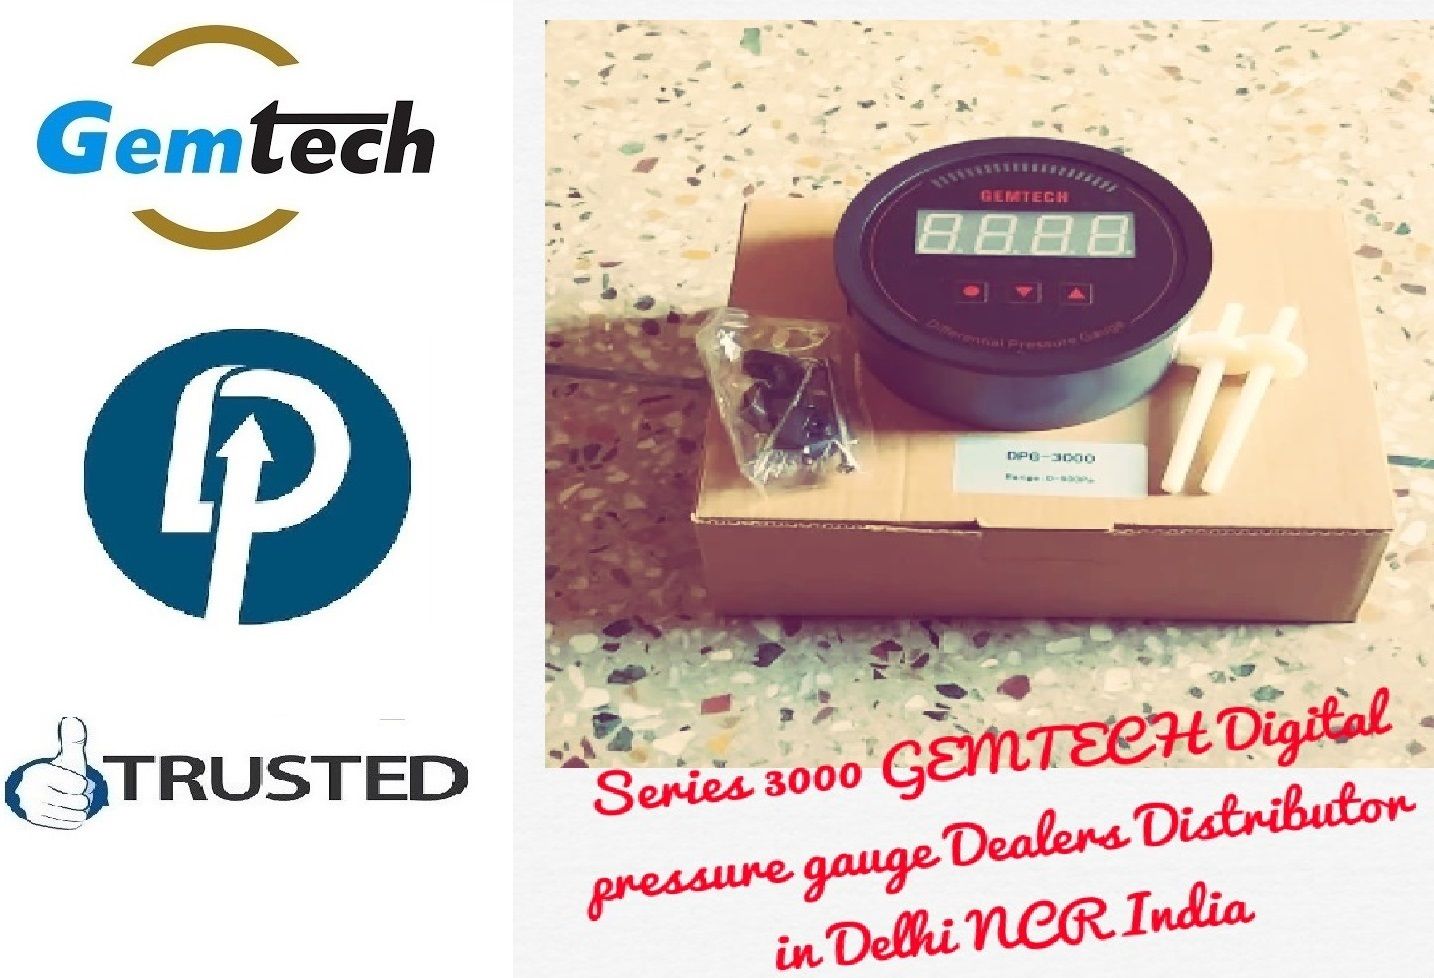 Gemtech Digital pressure gauge wholesalers Dealers India by Nanded Maharashtra